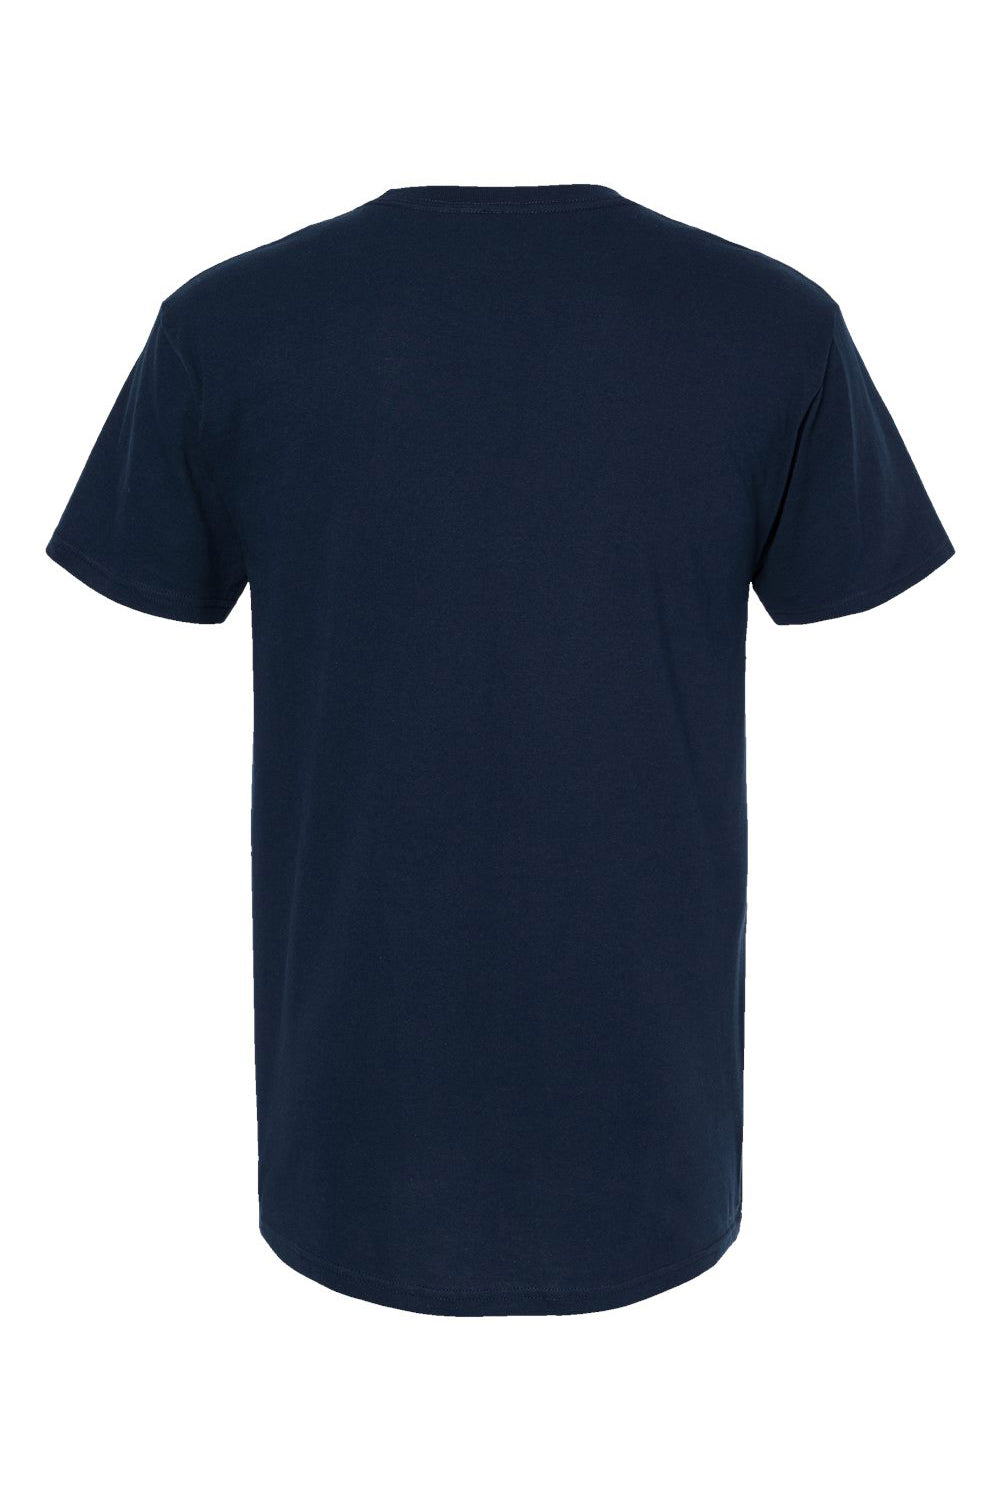 M&O 4800 Mens Gold Soft Touch Short Sleeve Crewneck T-Shirt Deep Navy Blue Flat Back